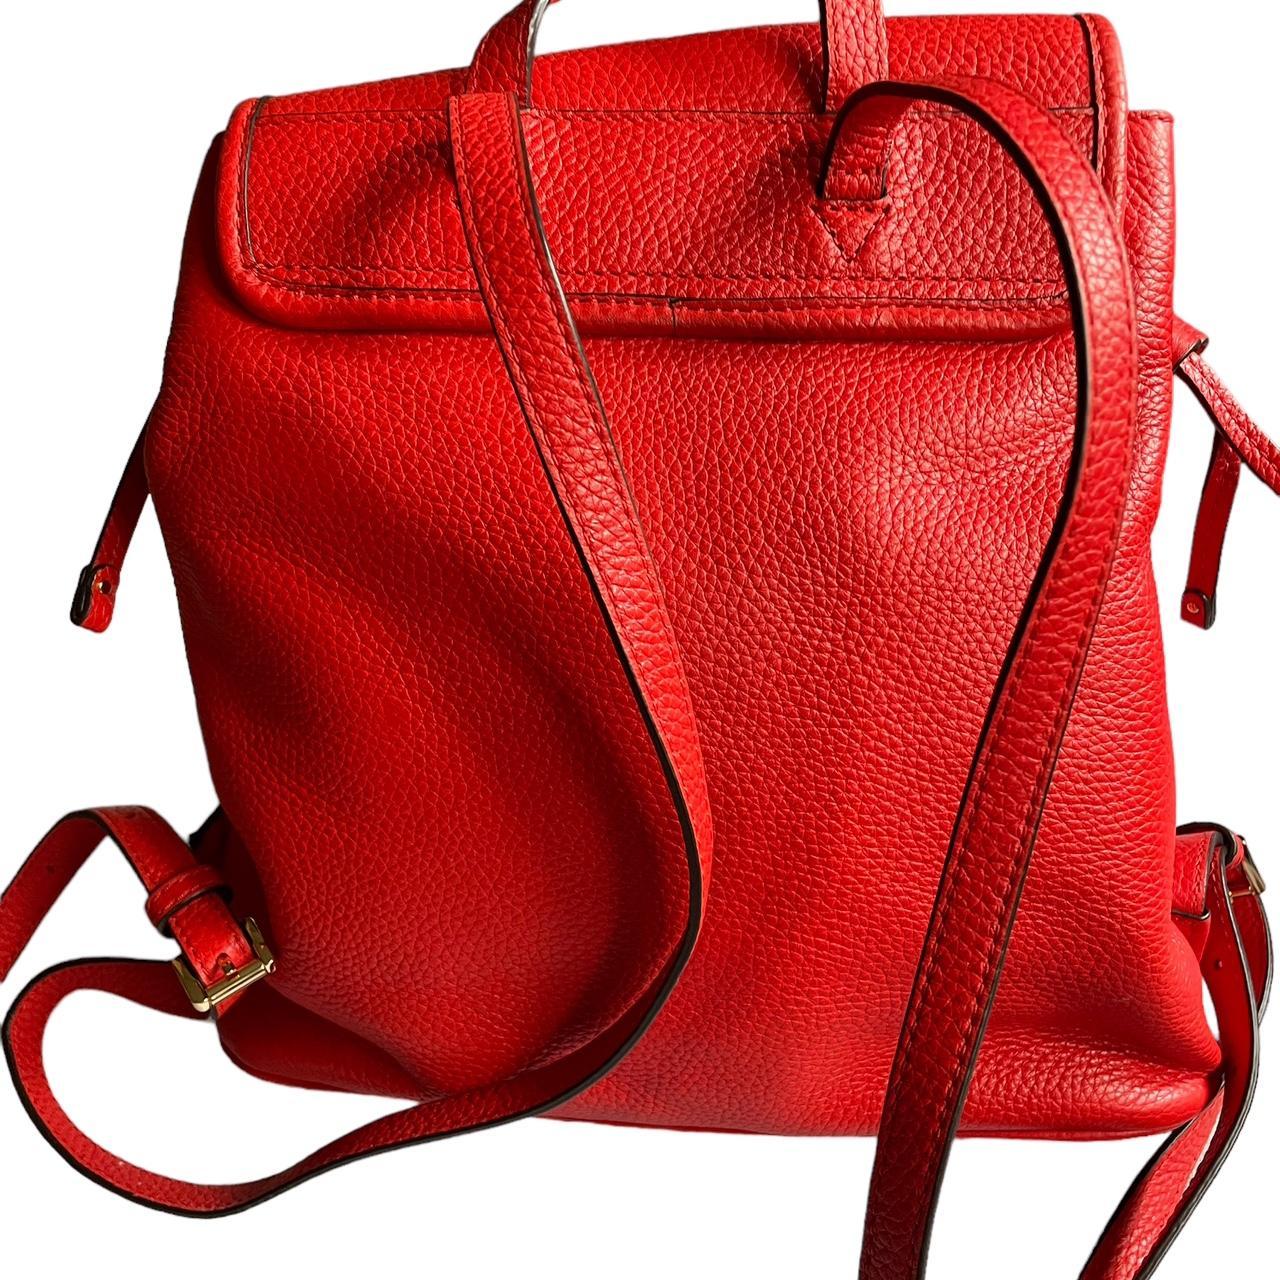 Michael Kors Women's Red Backpacks